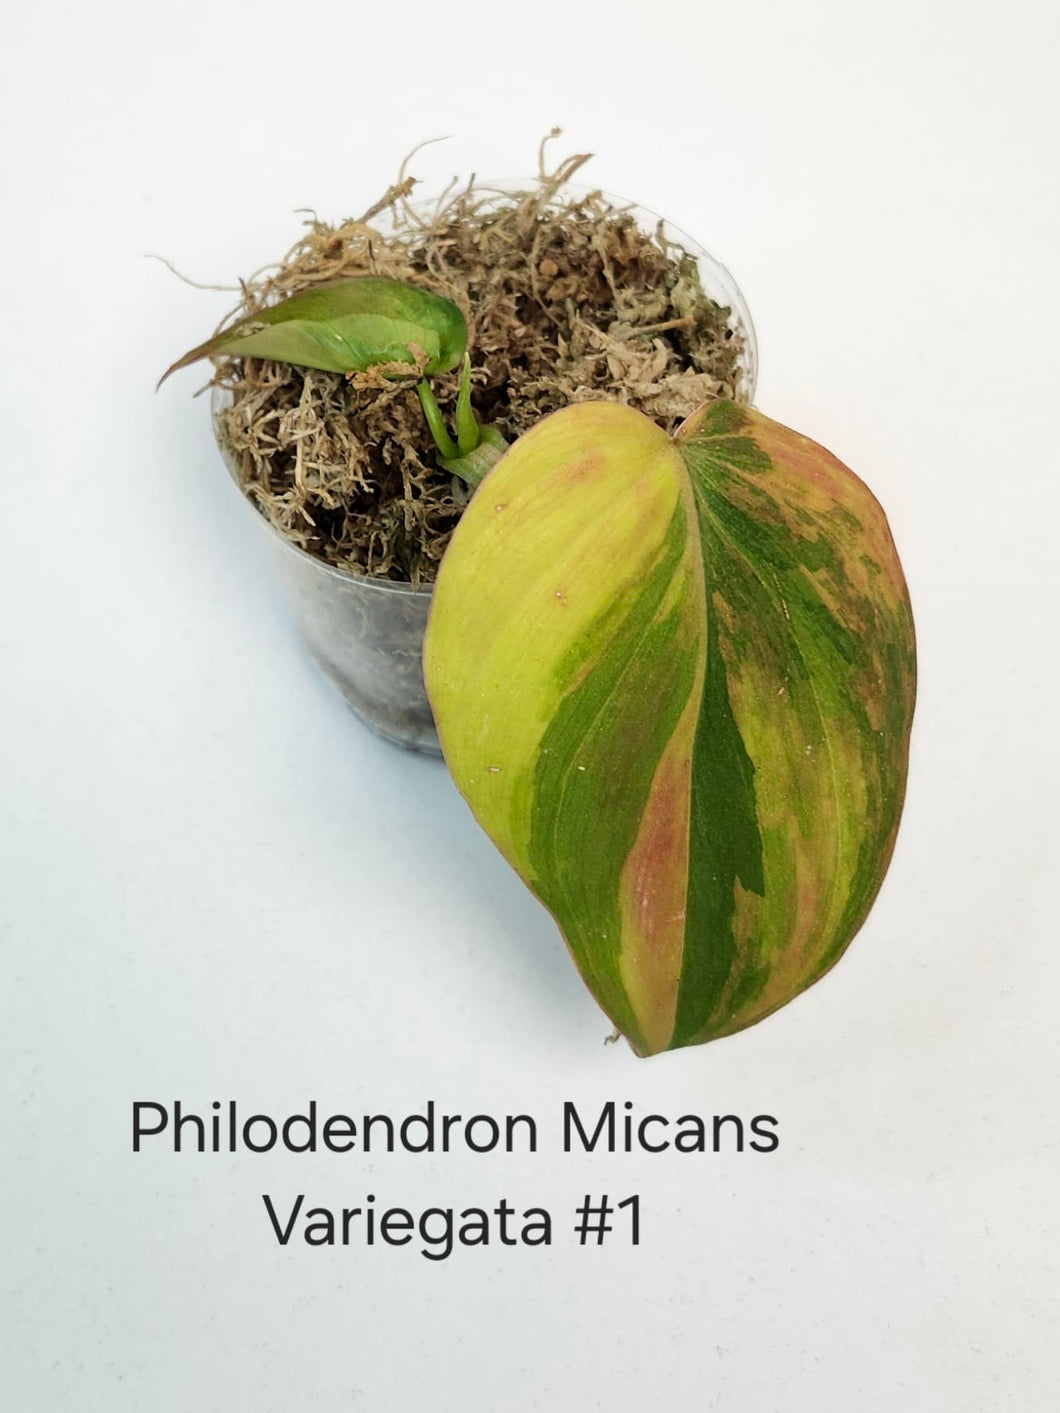 Philodendron Mican varigata #1 début de racine